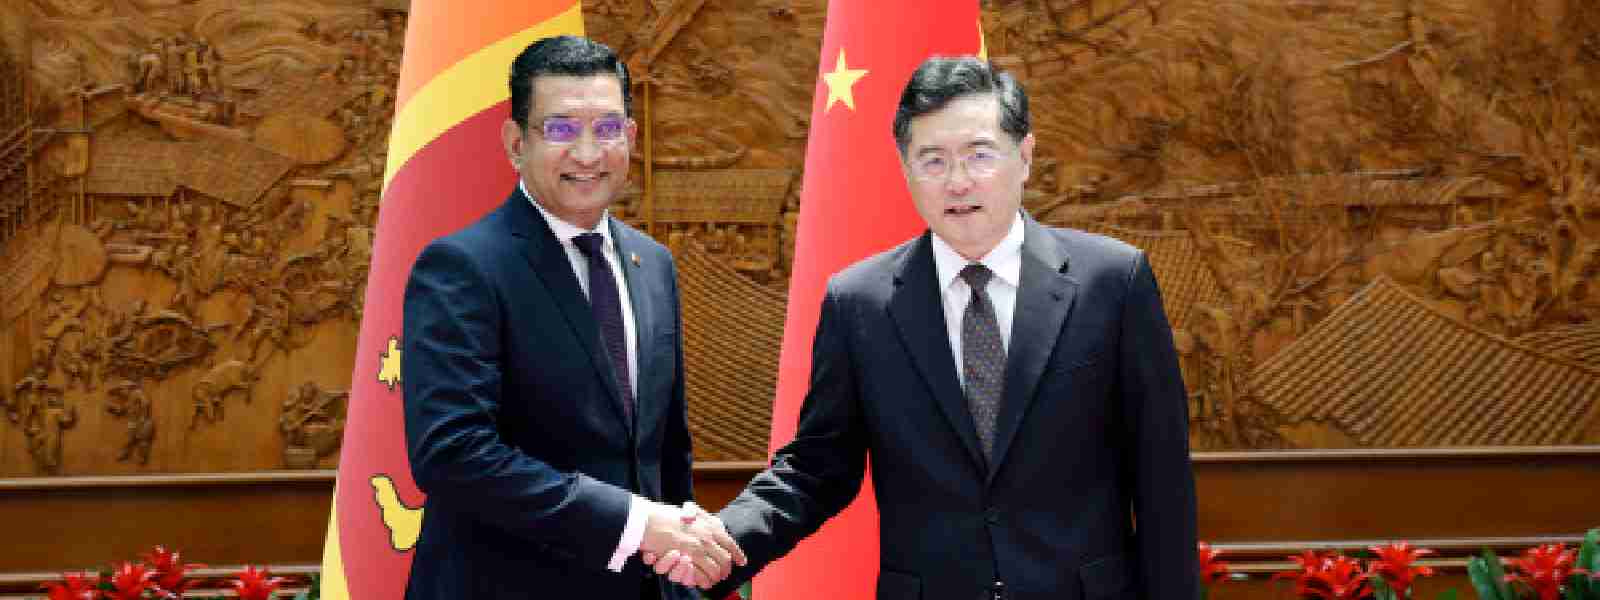 China, Sri Lanka vow to strengthen BRI